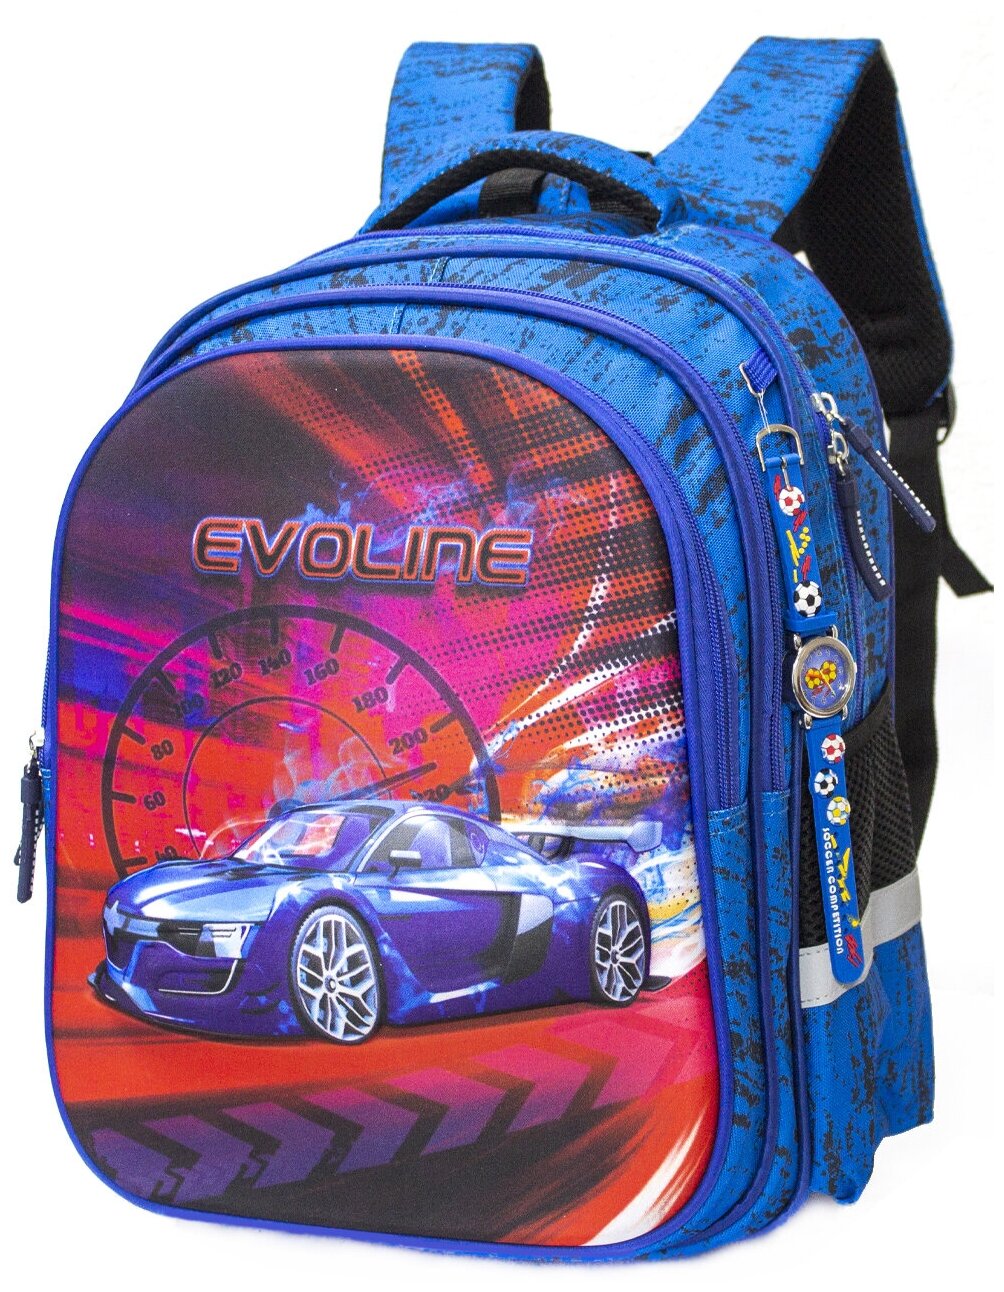 Рюкзак школьный для мальчика с 3D рисунком, Evoline, арт. S600-car